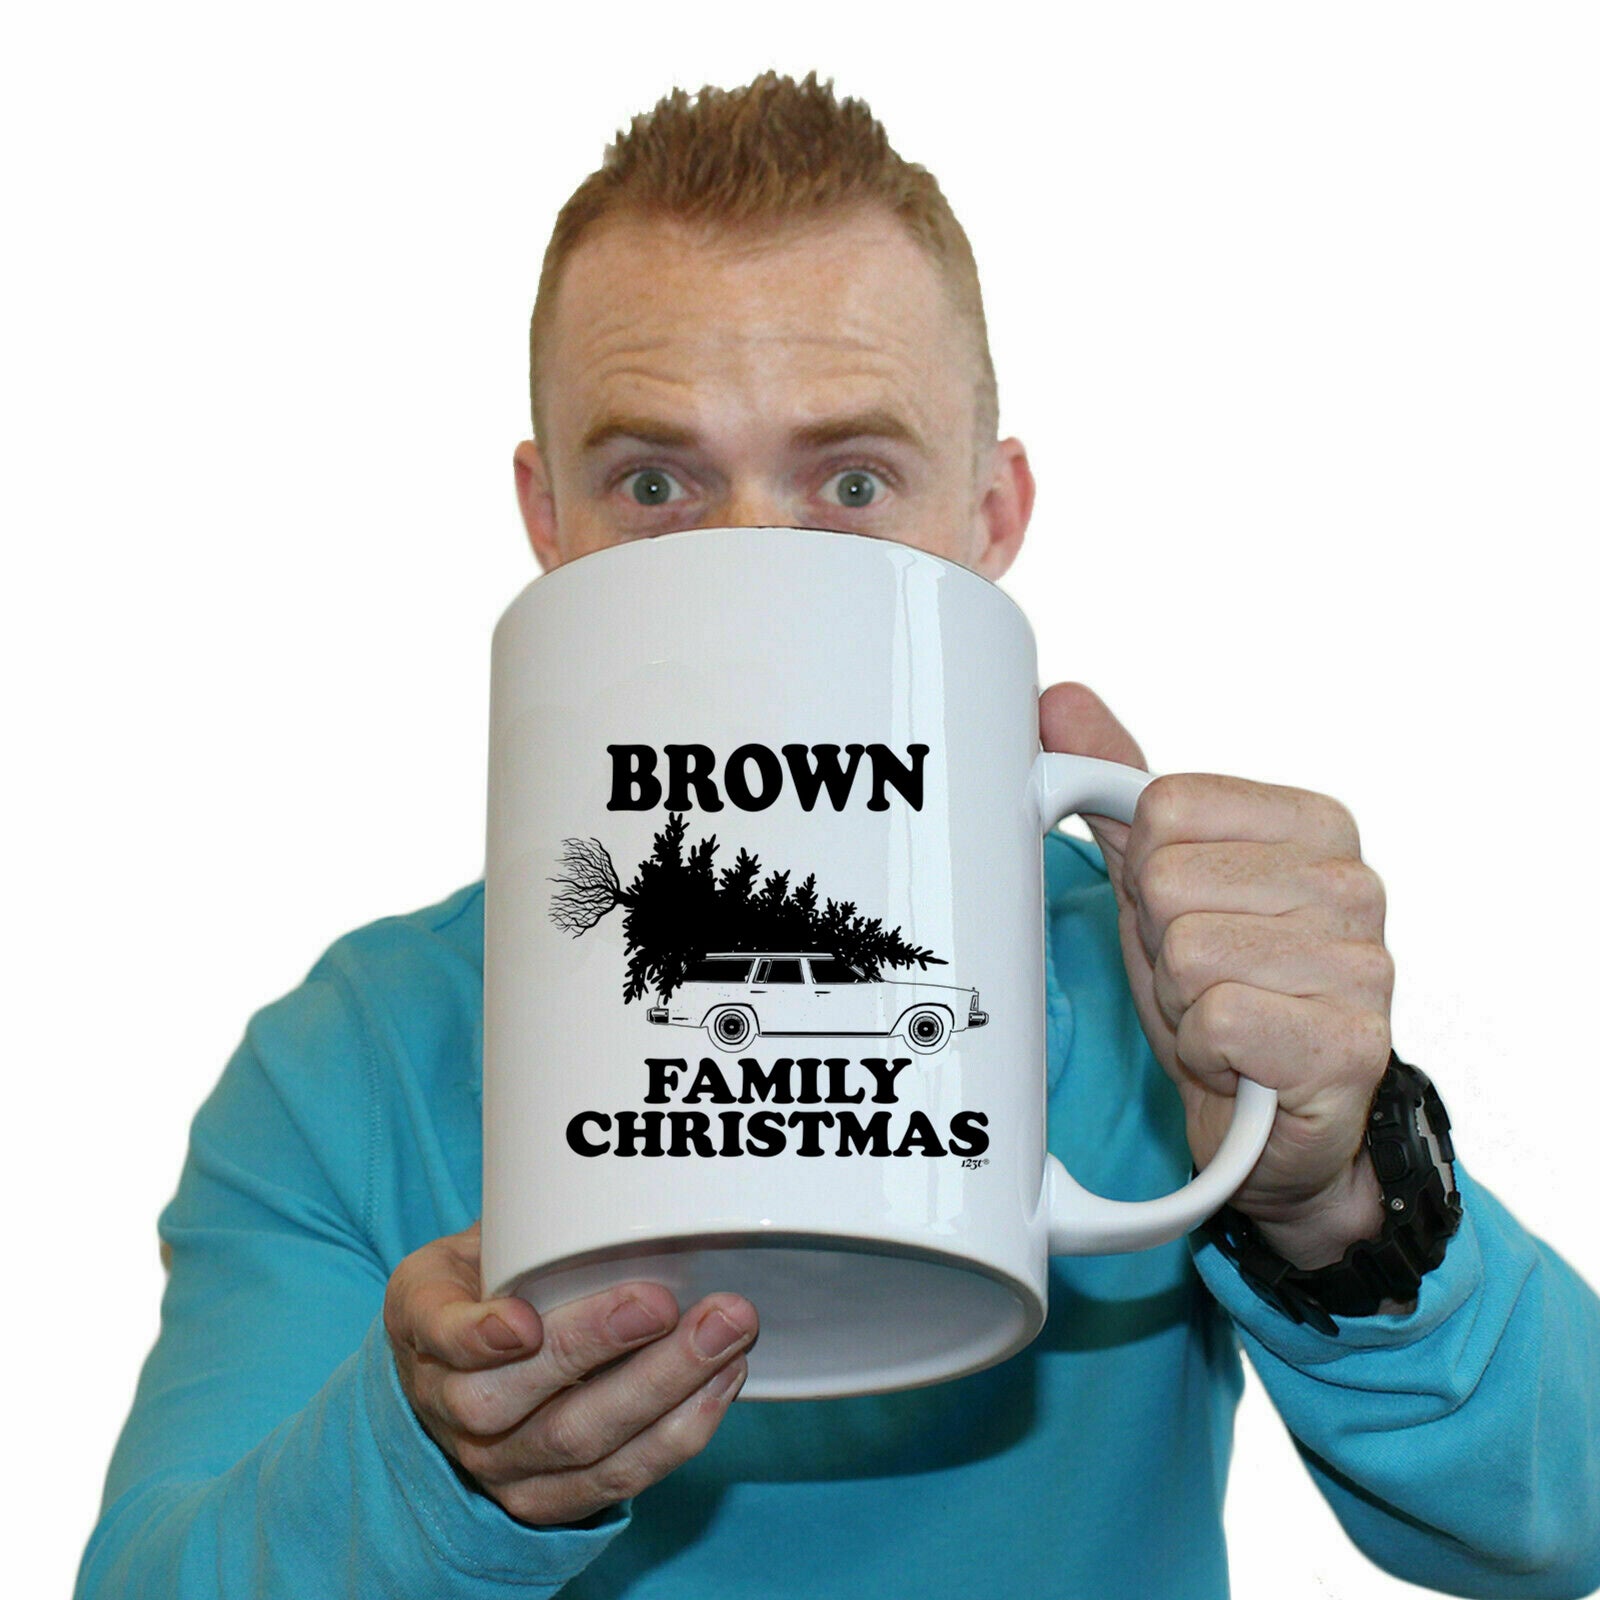 The Christmas Hub - Family Christmas Brown - Funny Giant 2 Litre Mug